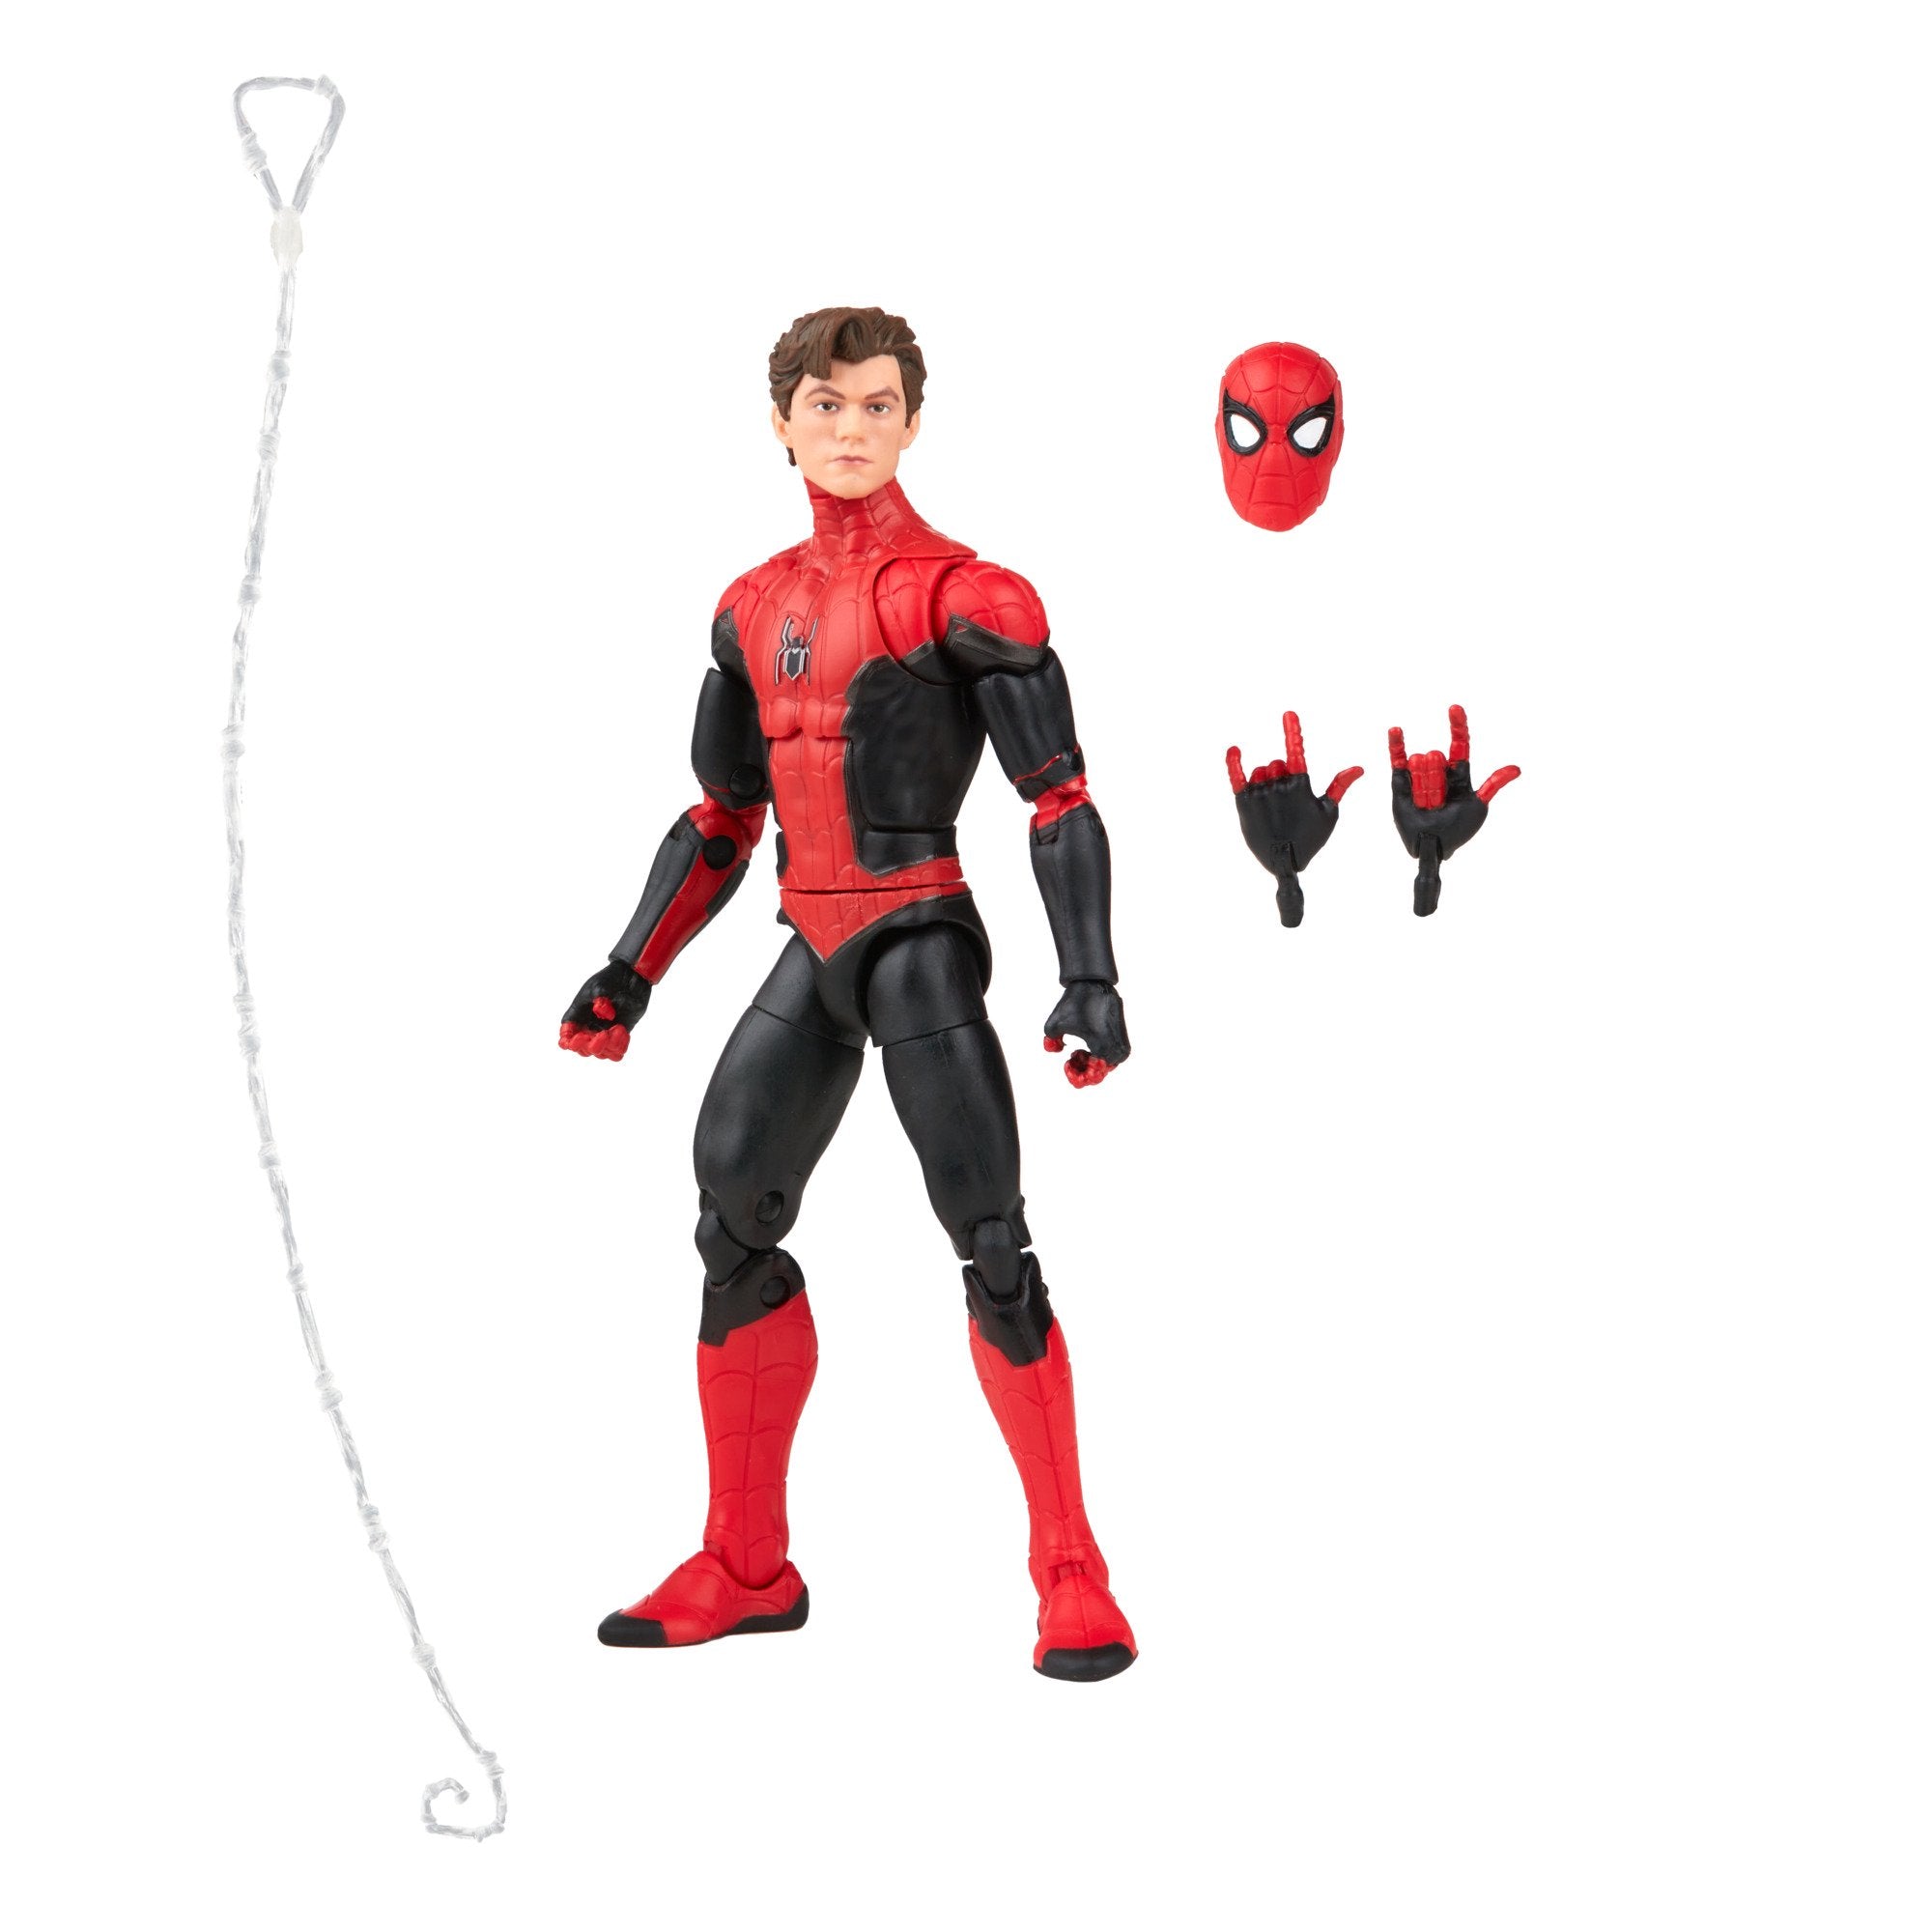 Marvel Legends Spider-Man Upgraded Suit Walmart Exclusive Action Figure